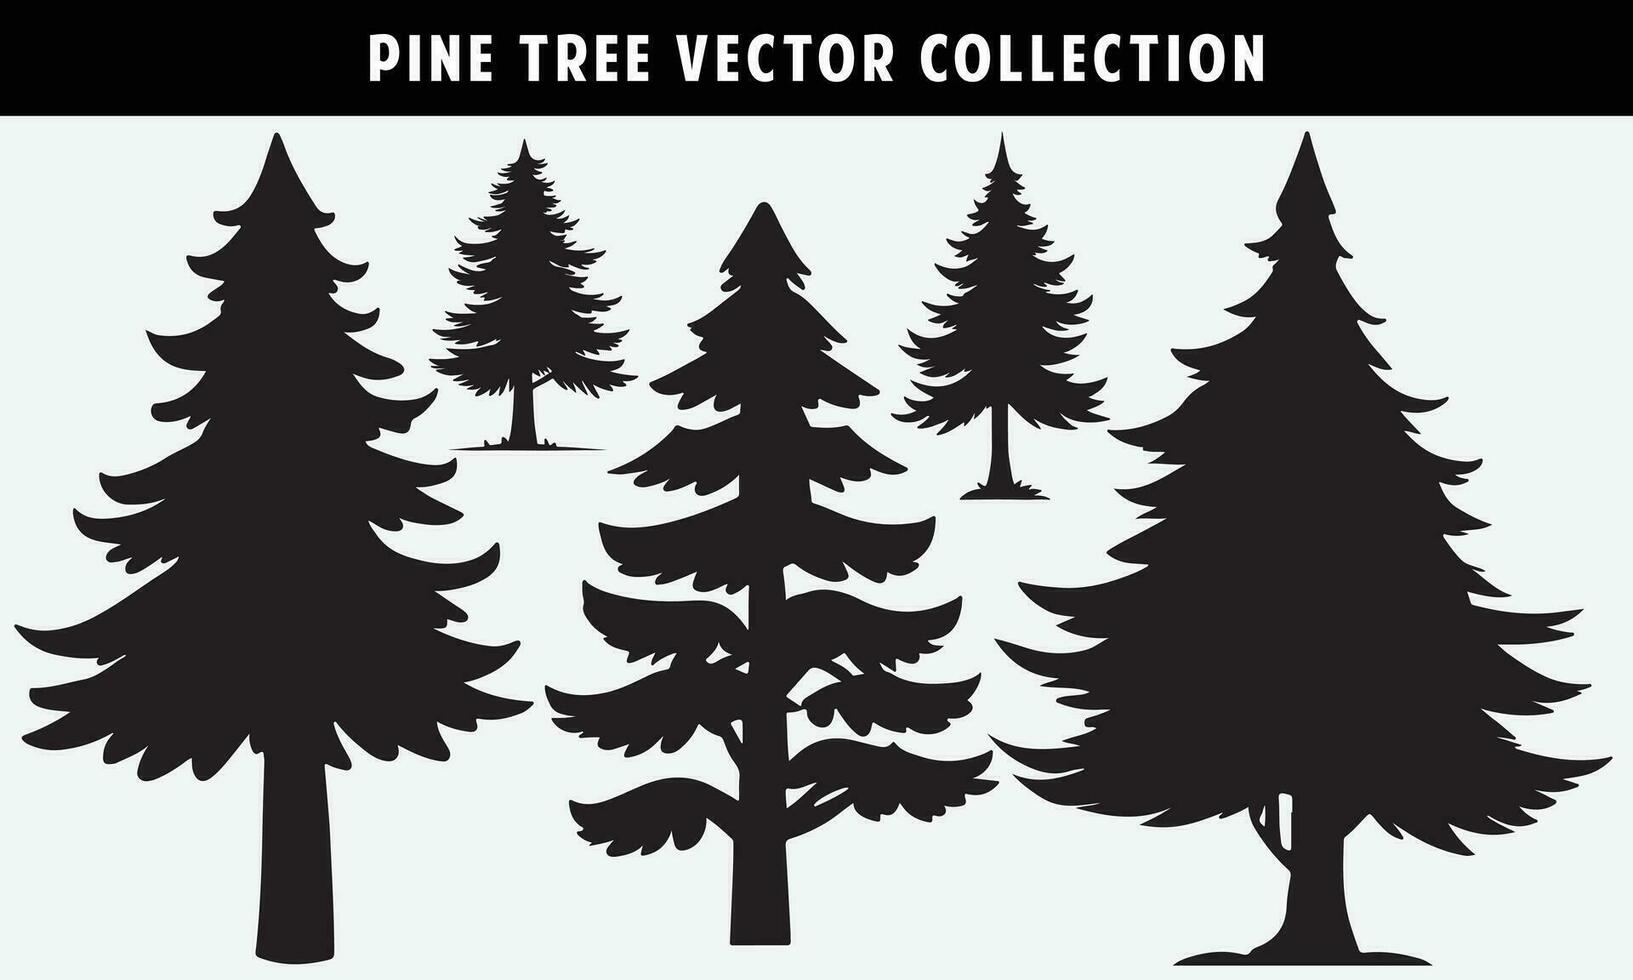 conjunto de pino arboles siluetas vector gráficos para diseño